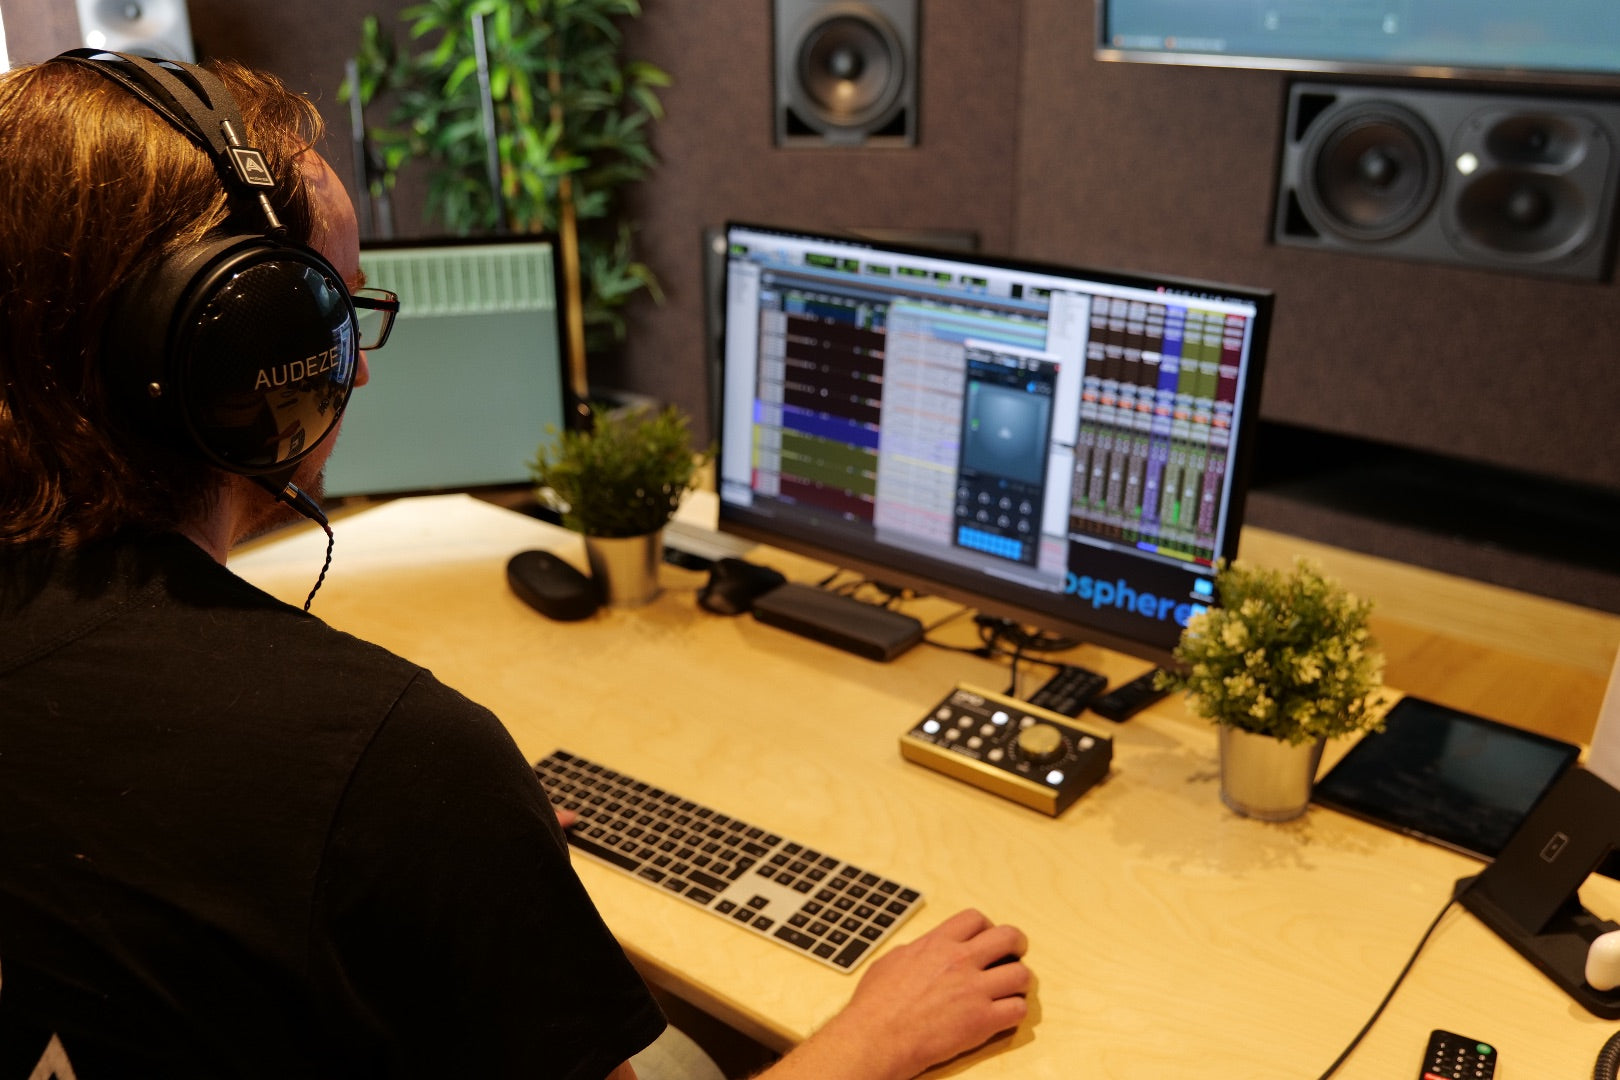 Mike Hillier in his studio wearing Audeze LCD-XC headphones